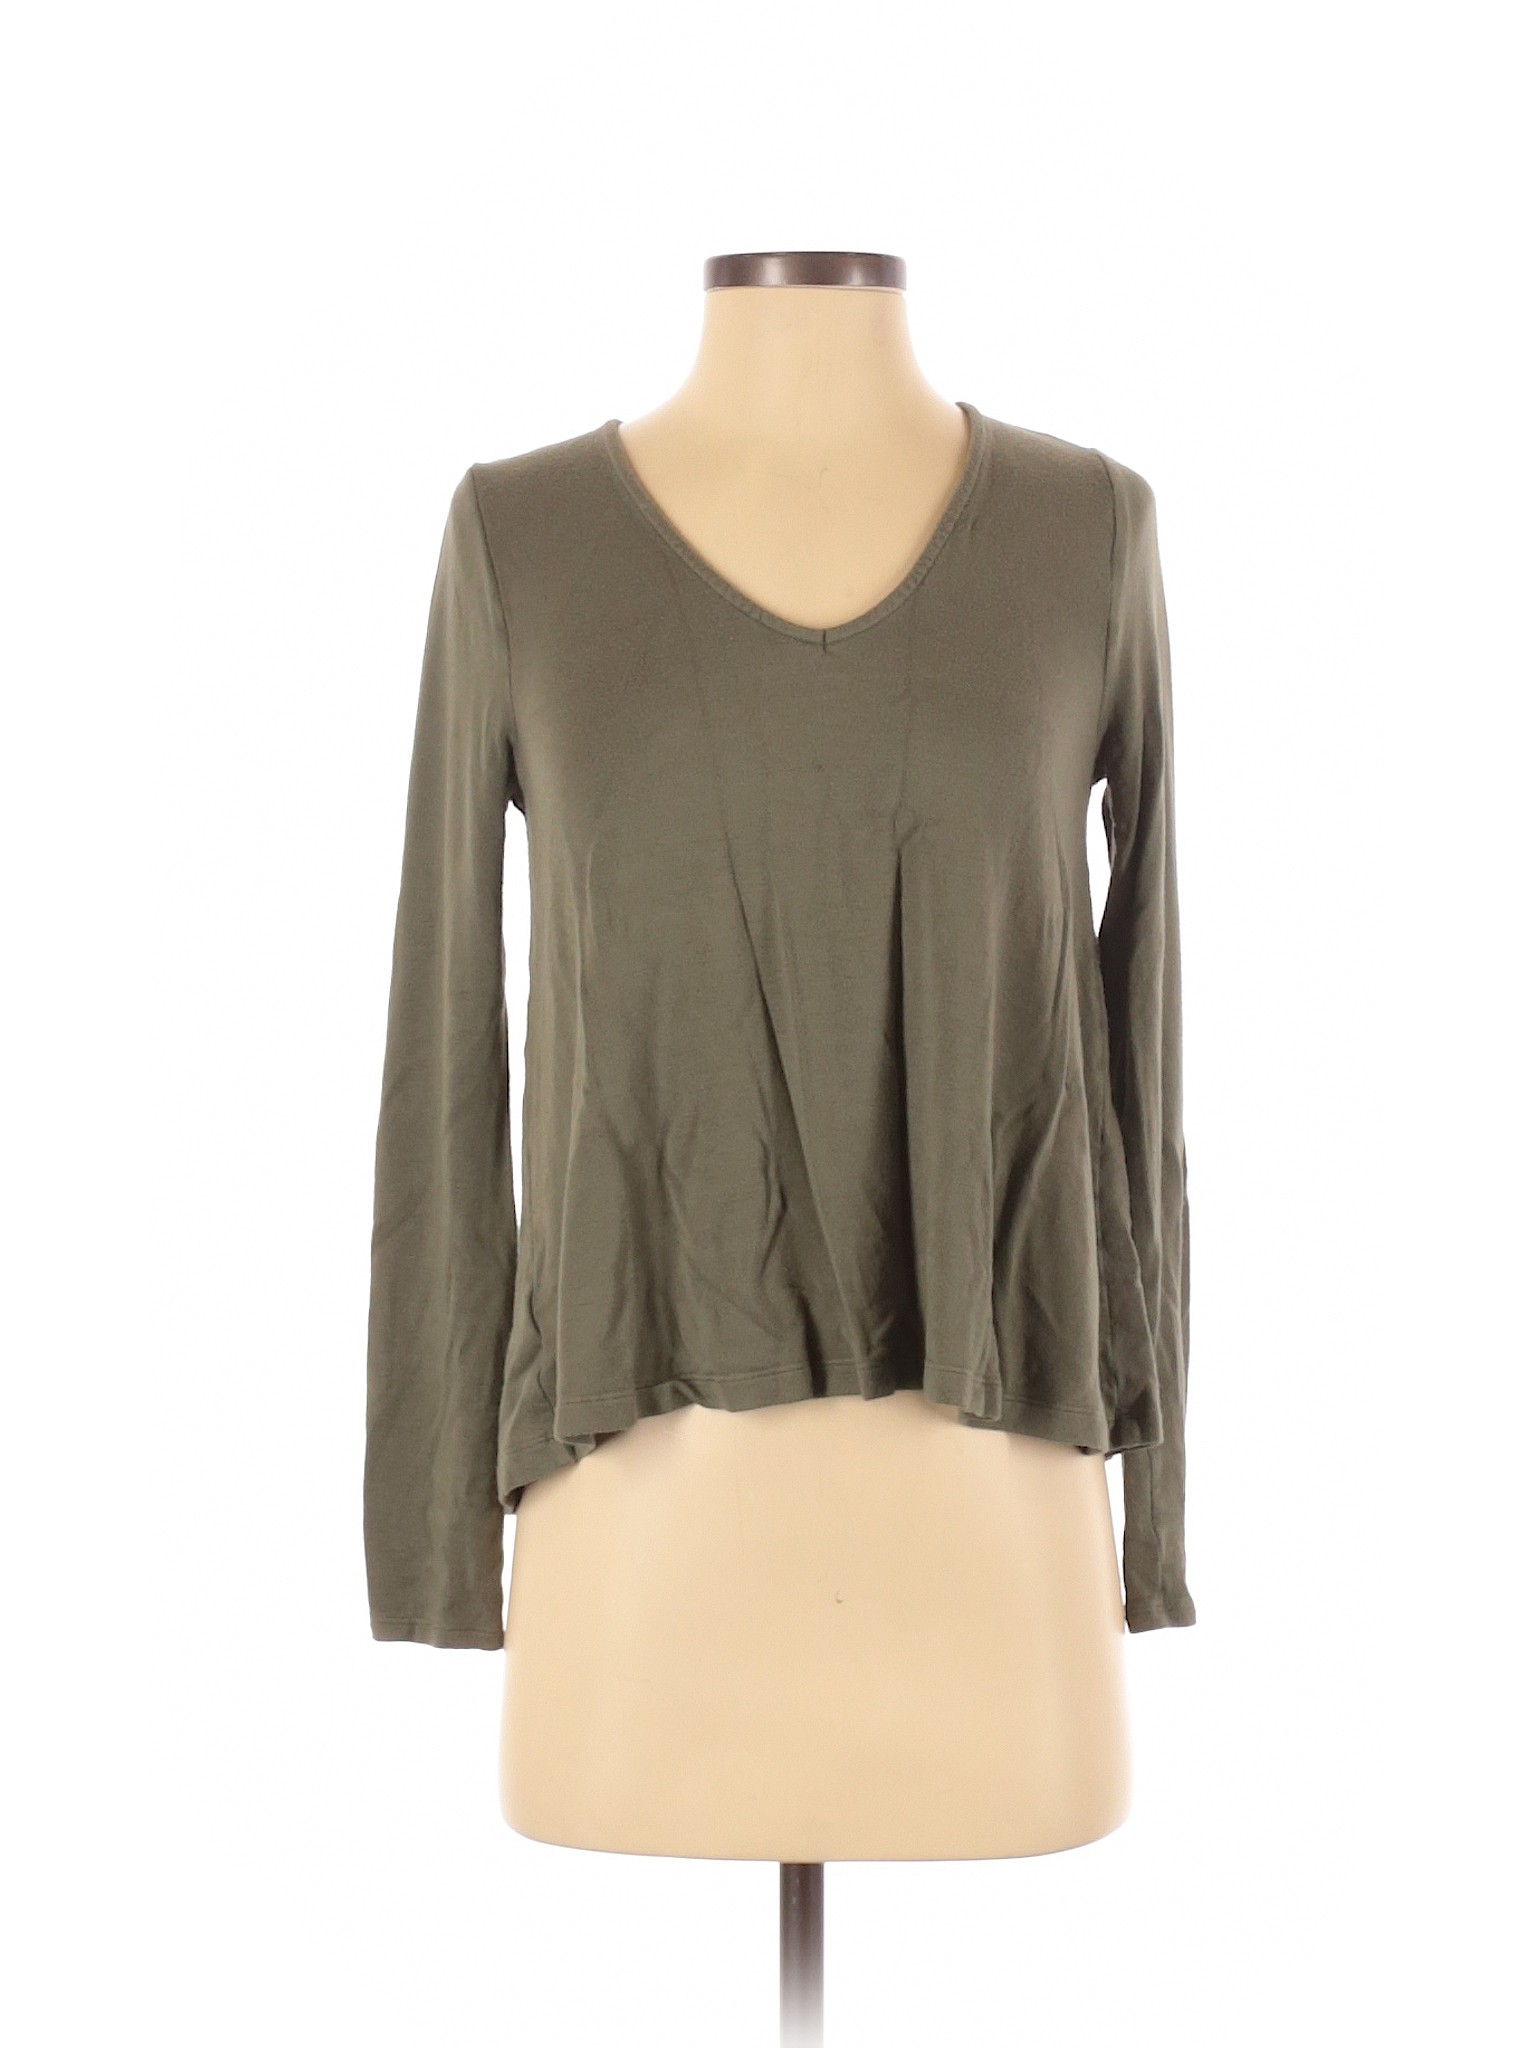 Lou & Grey Women Green Long Sleeve T-Shirt XS | eBay